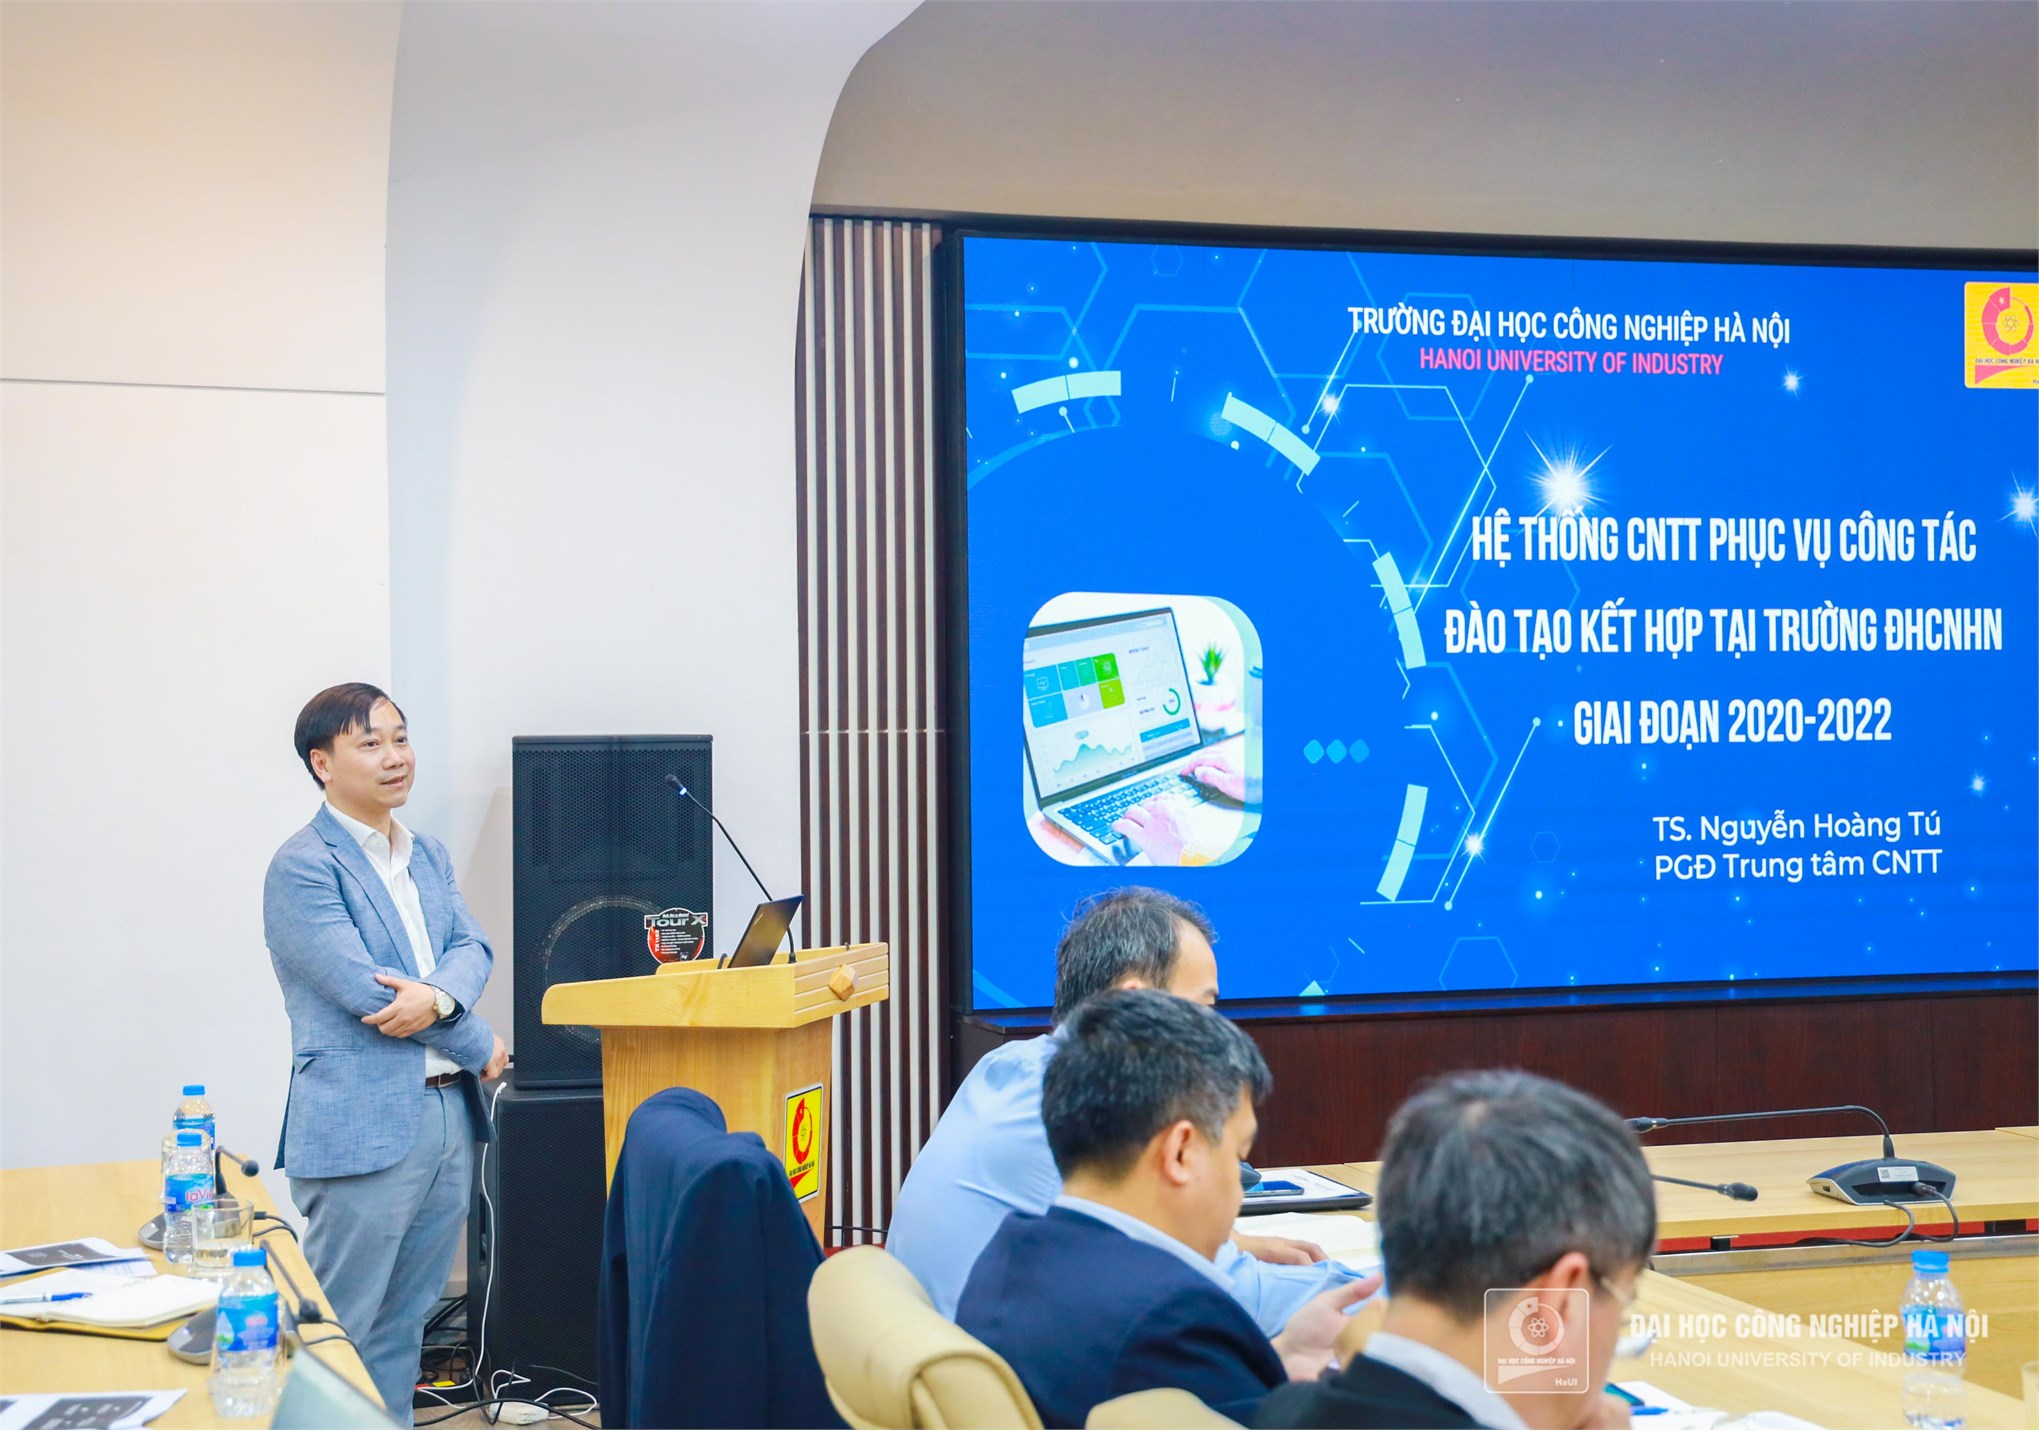 TS.Nguyễn Hoàng Tú, đại diện Trung tâm Công nghệ thông tin trình bày tham luận “Hệ thống công nghệ thông tin phục vụ công tác đào tạo kết hợp tại Trường Đại học Công nghiệp Hà Nội giai đoạn 2020-2022”